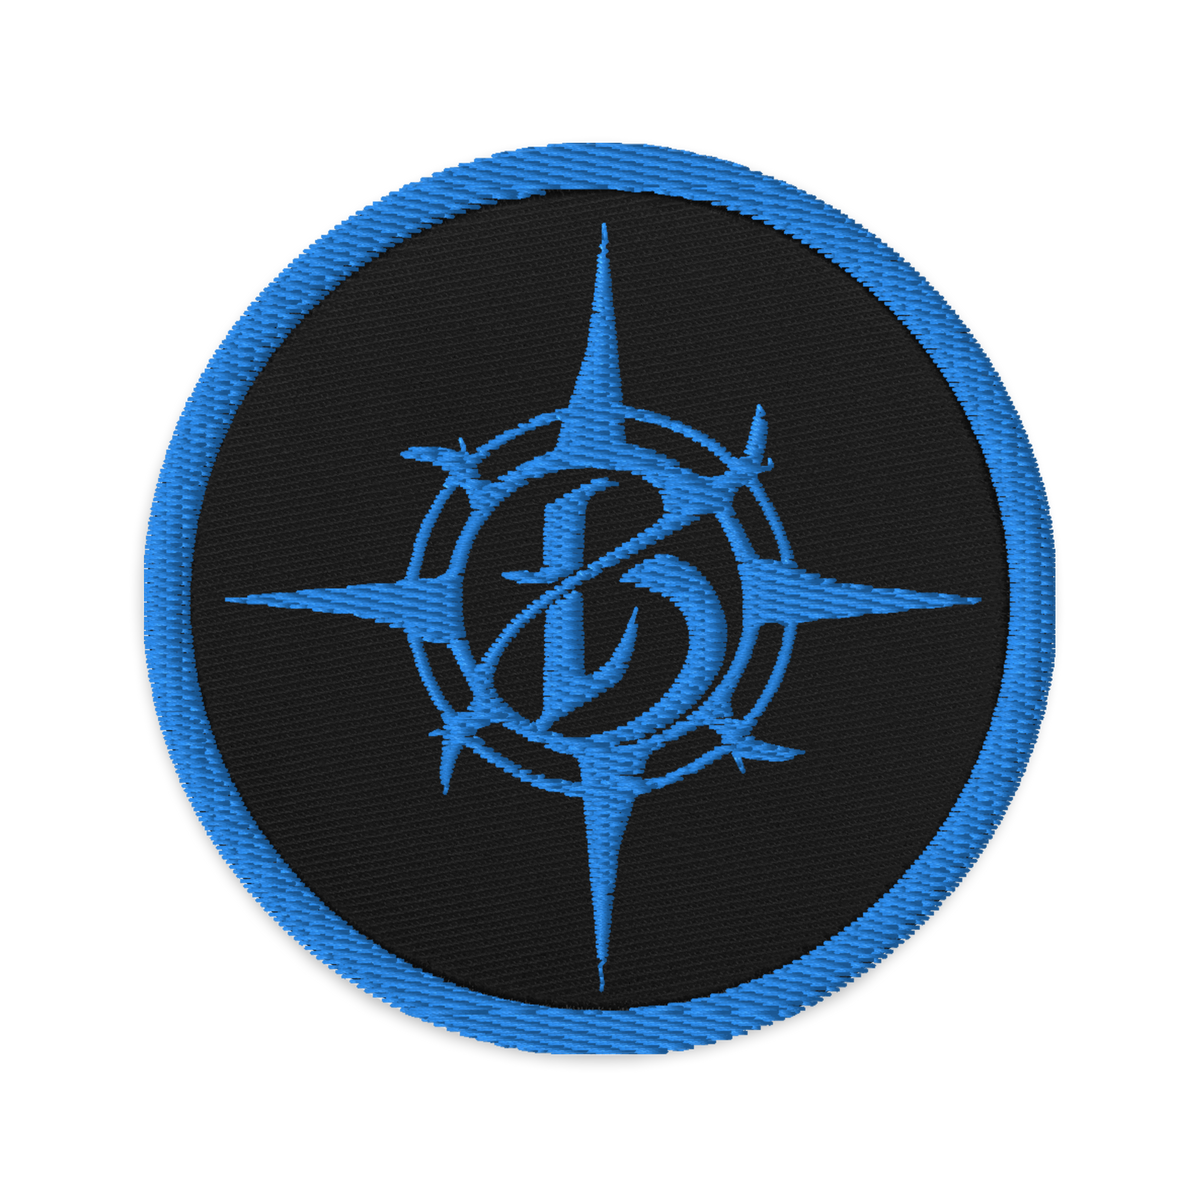 Borealis Compass Logo Embroidered Patch - Aqua Blue